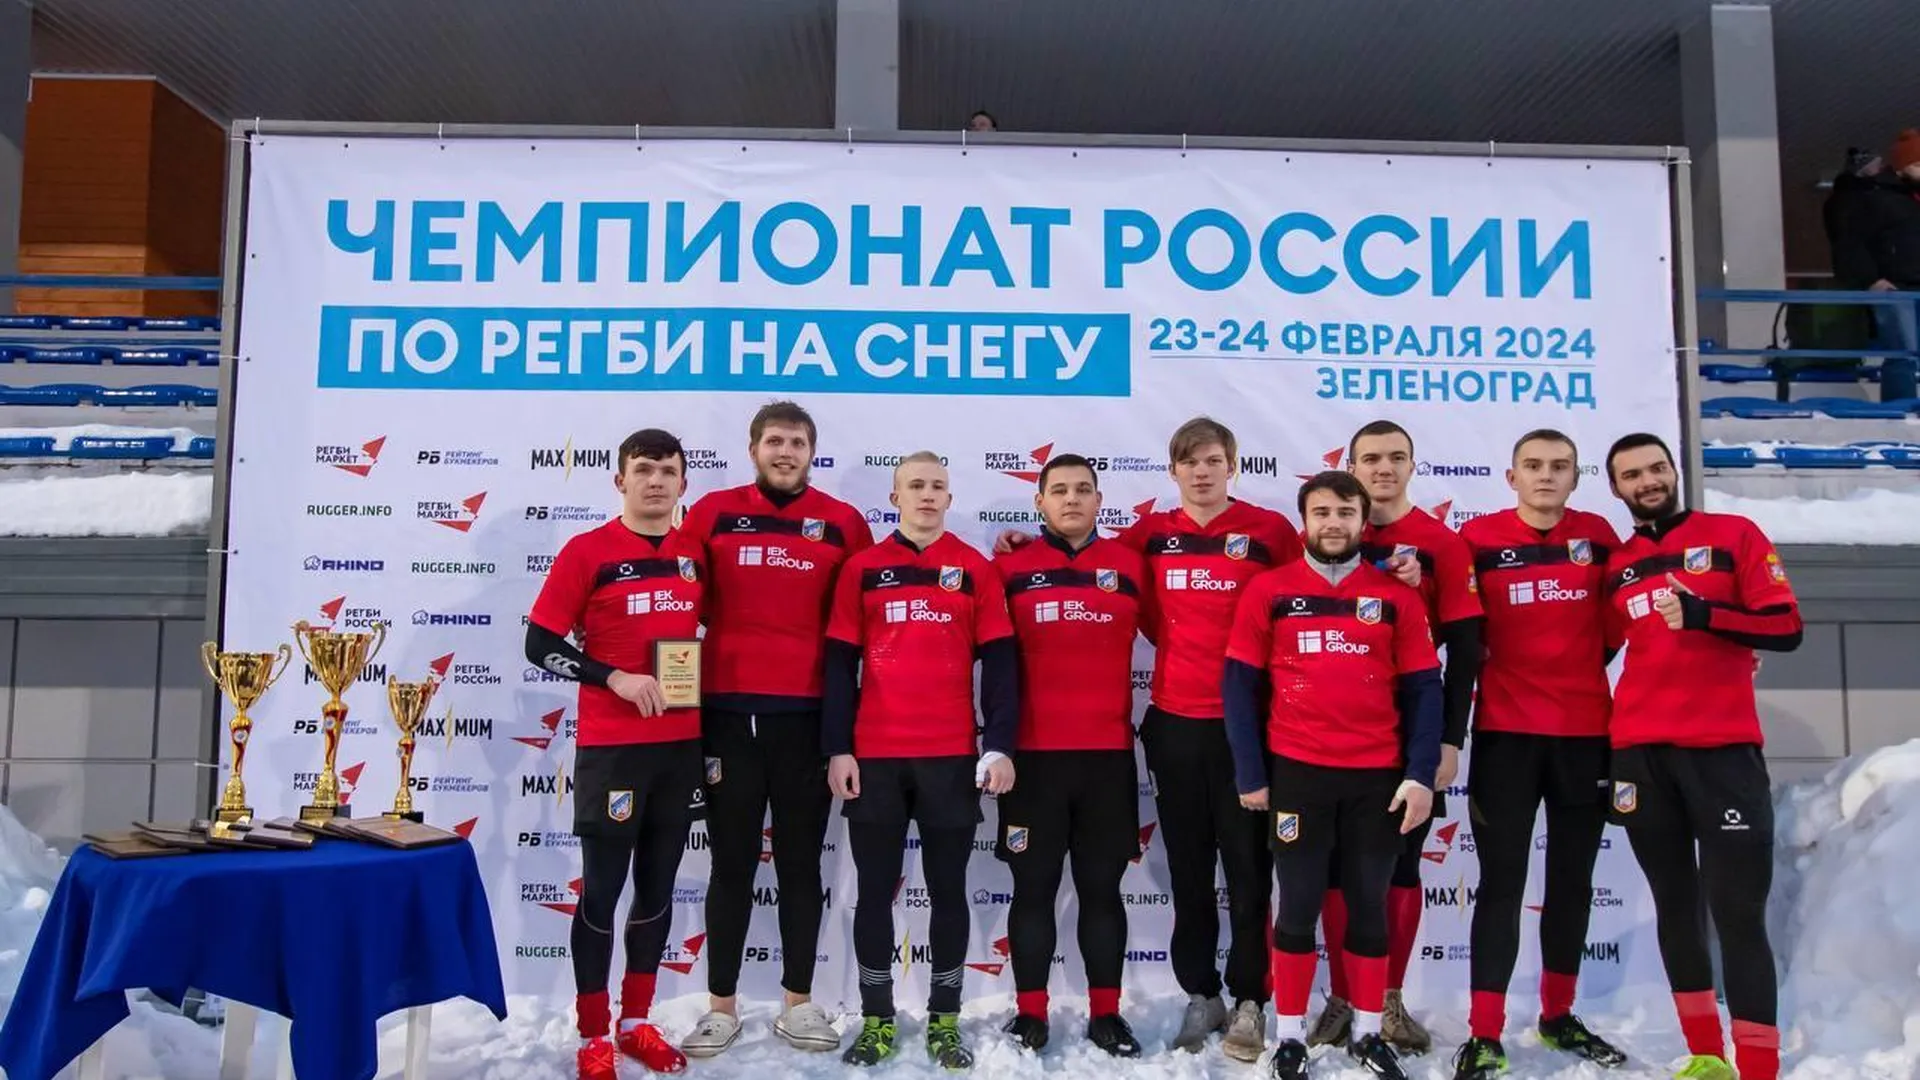 Команда «ВВА-Подмосковье» выиграла «бронзу» чемпионата России по регби на снегу